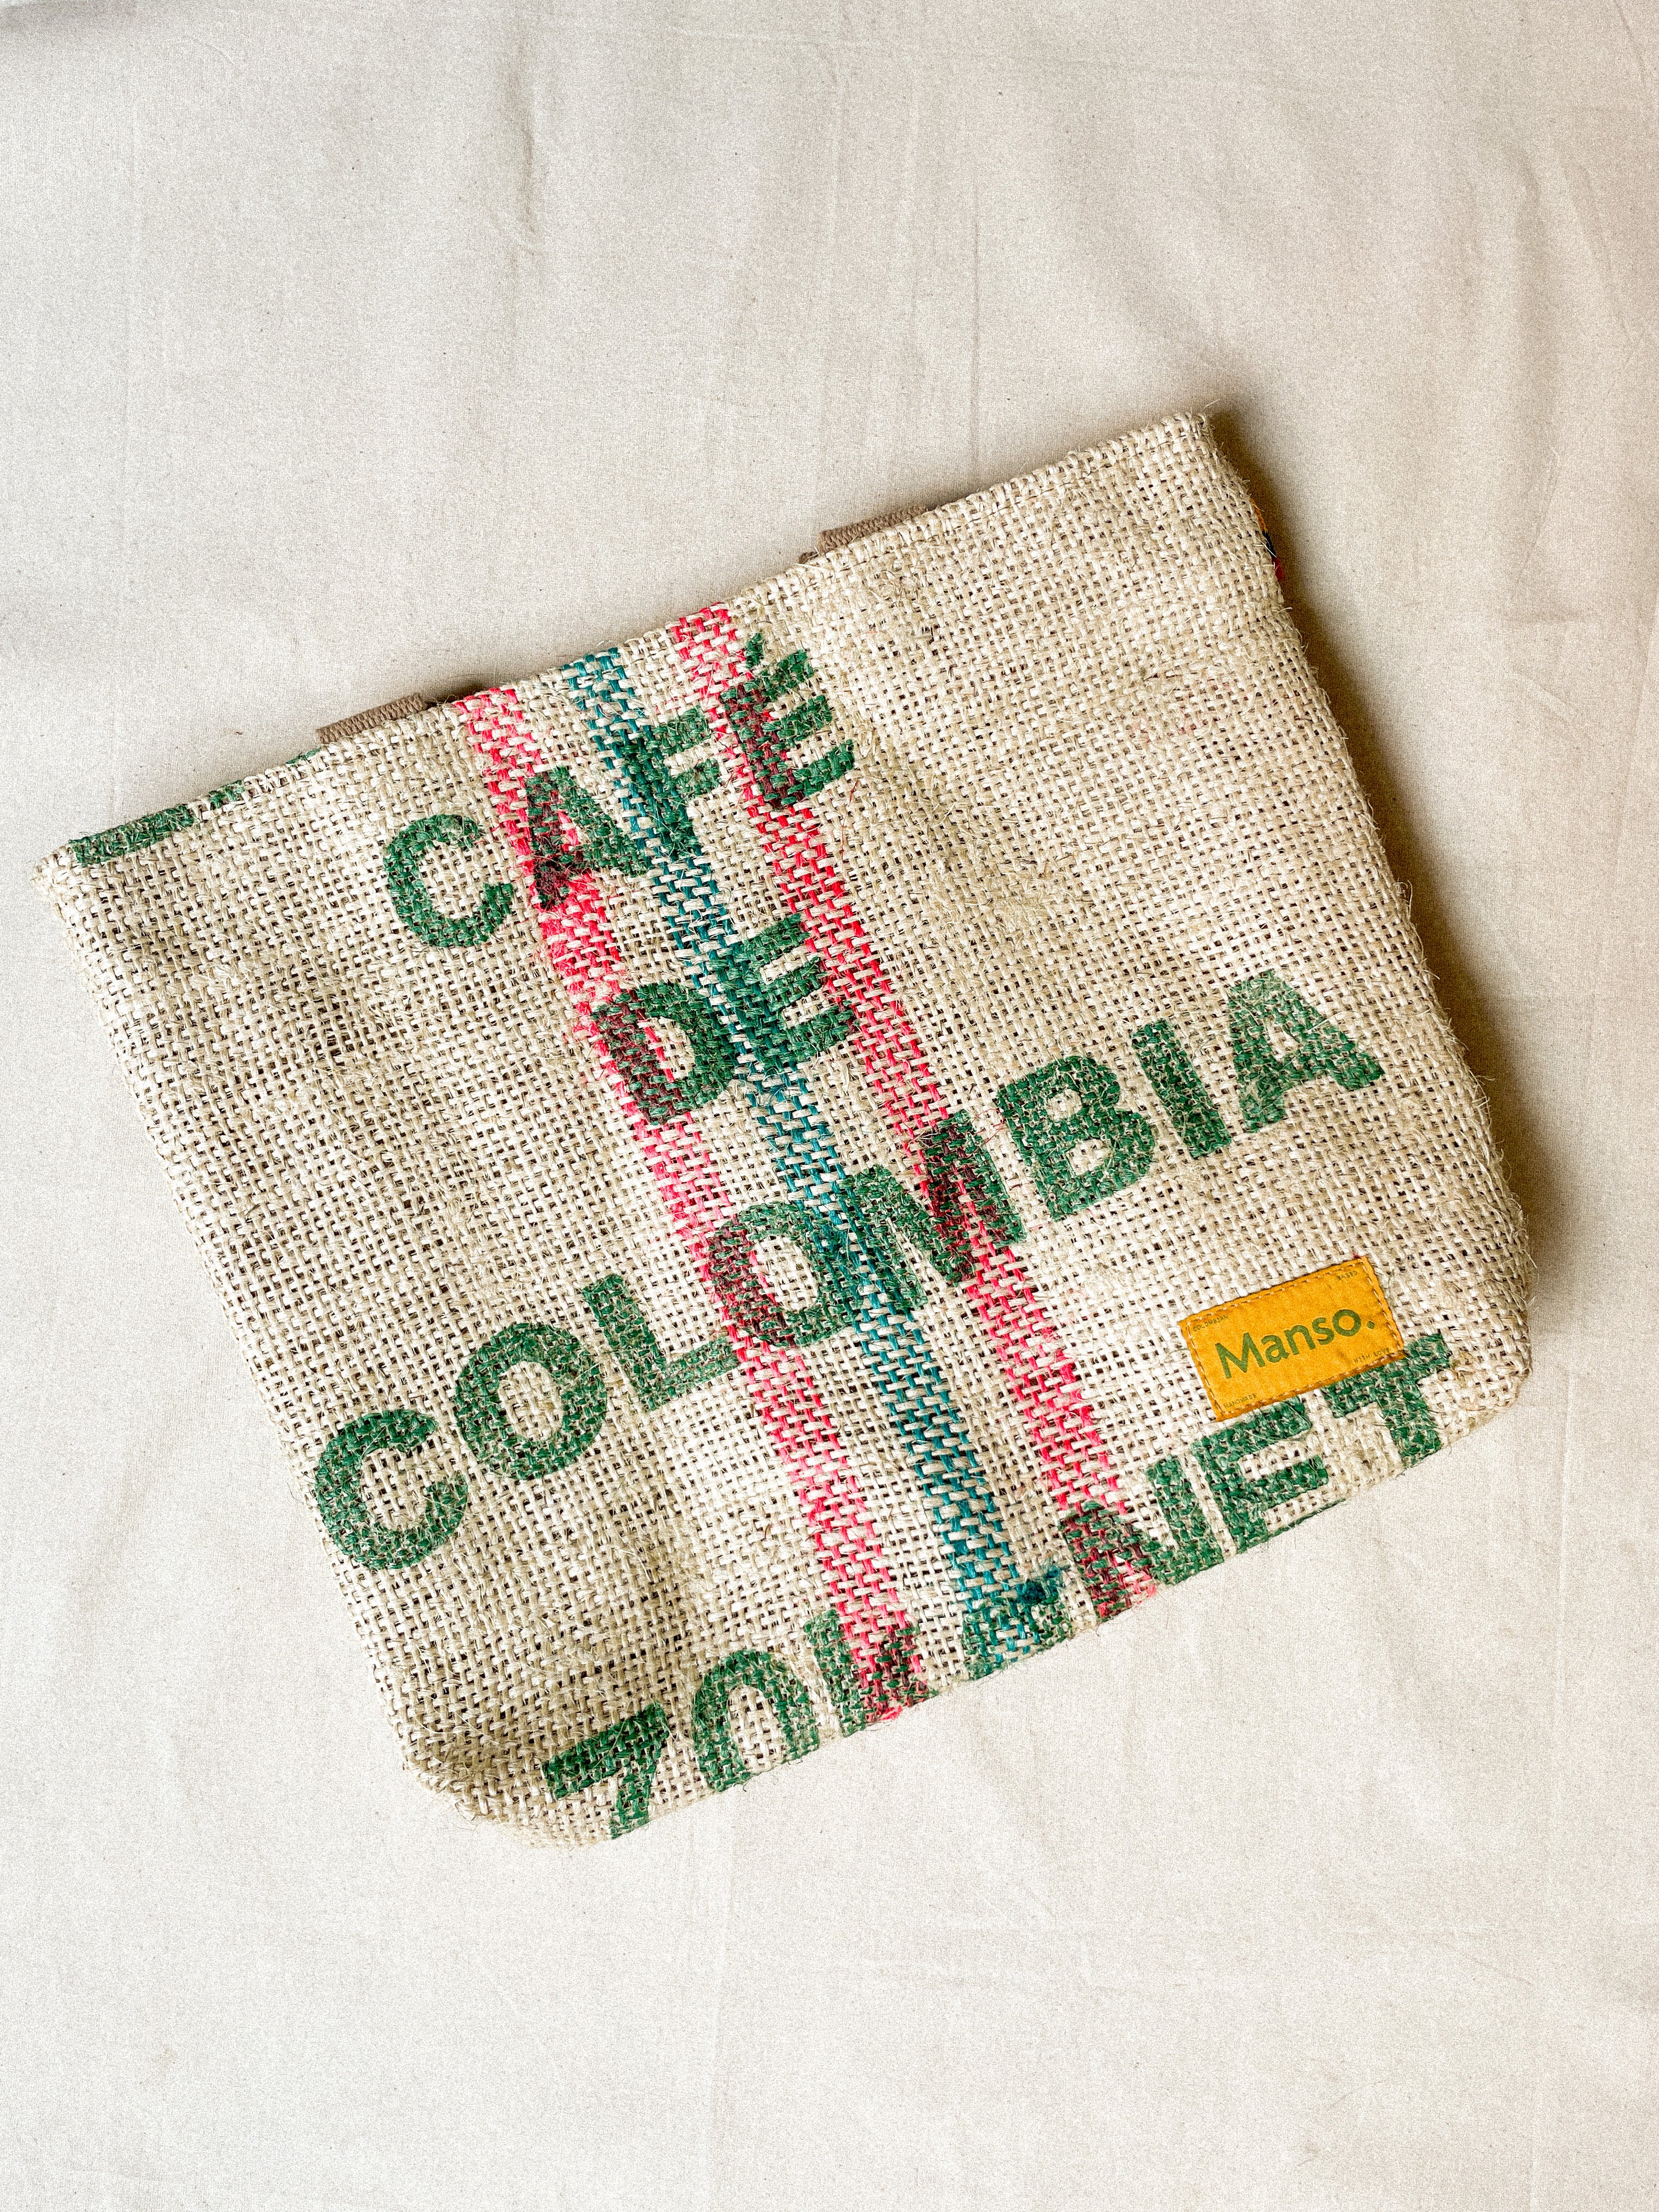 El rayao (Café de Colombia)